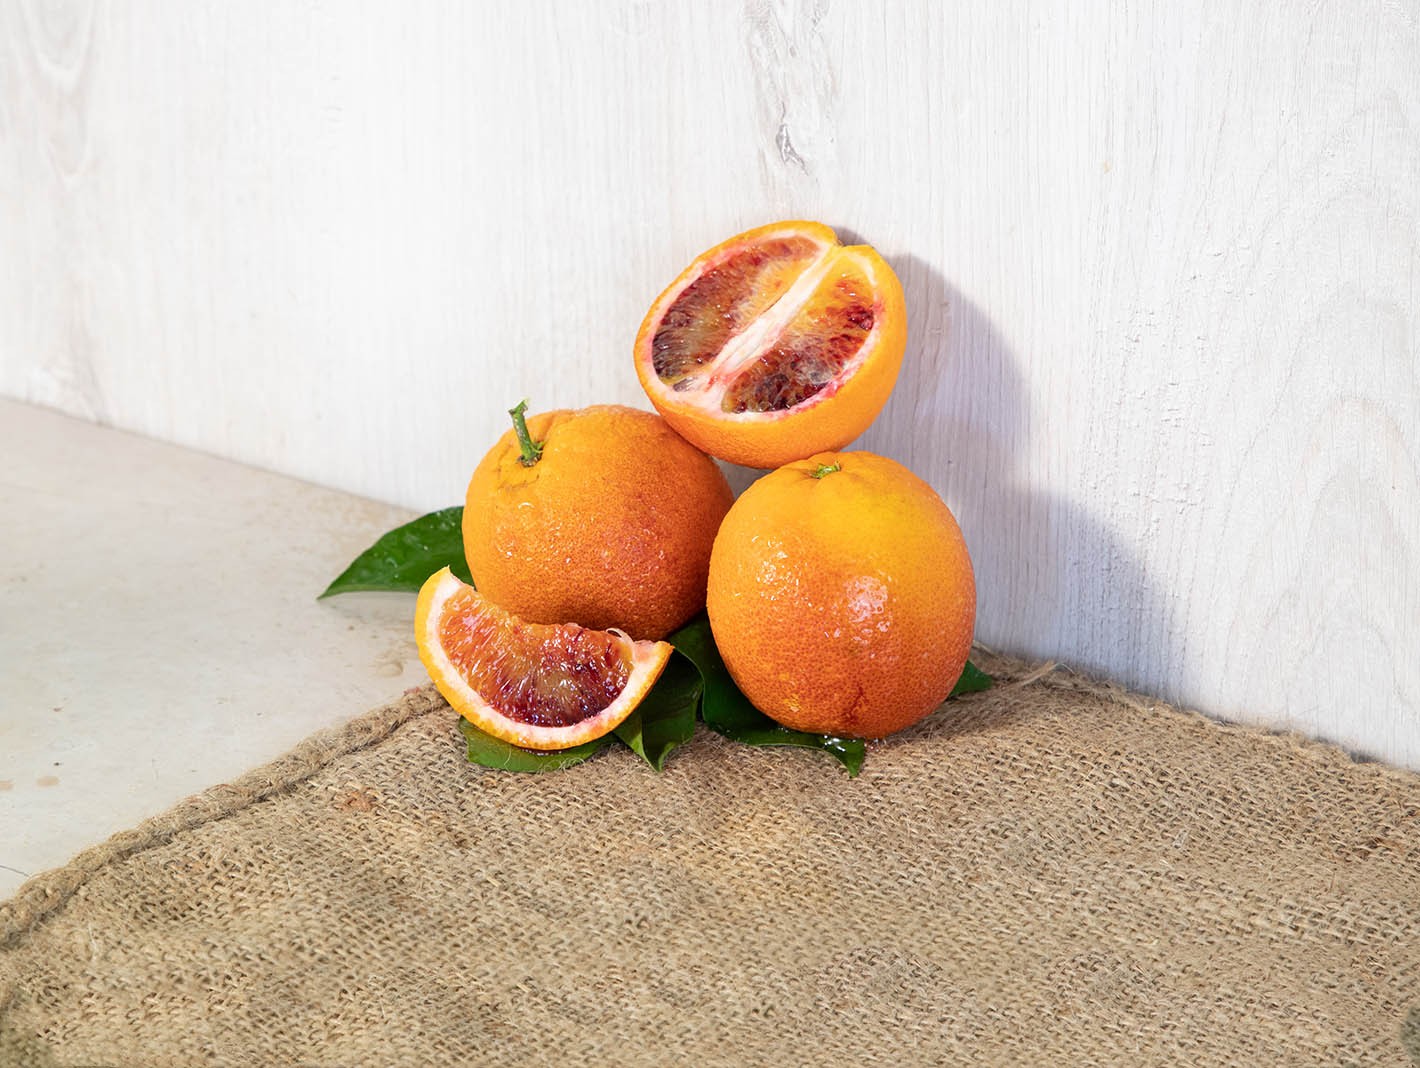 Oranfrutta Arance Moro